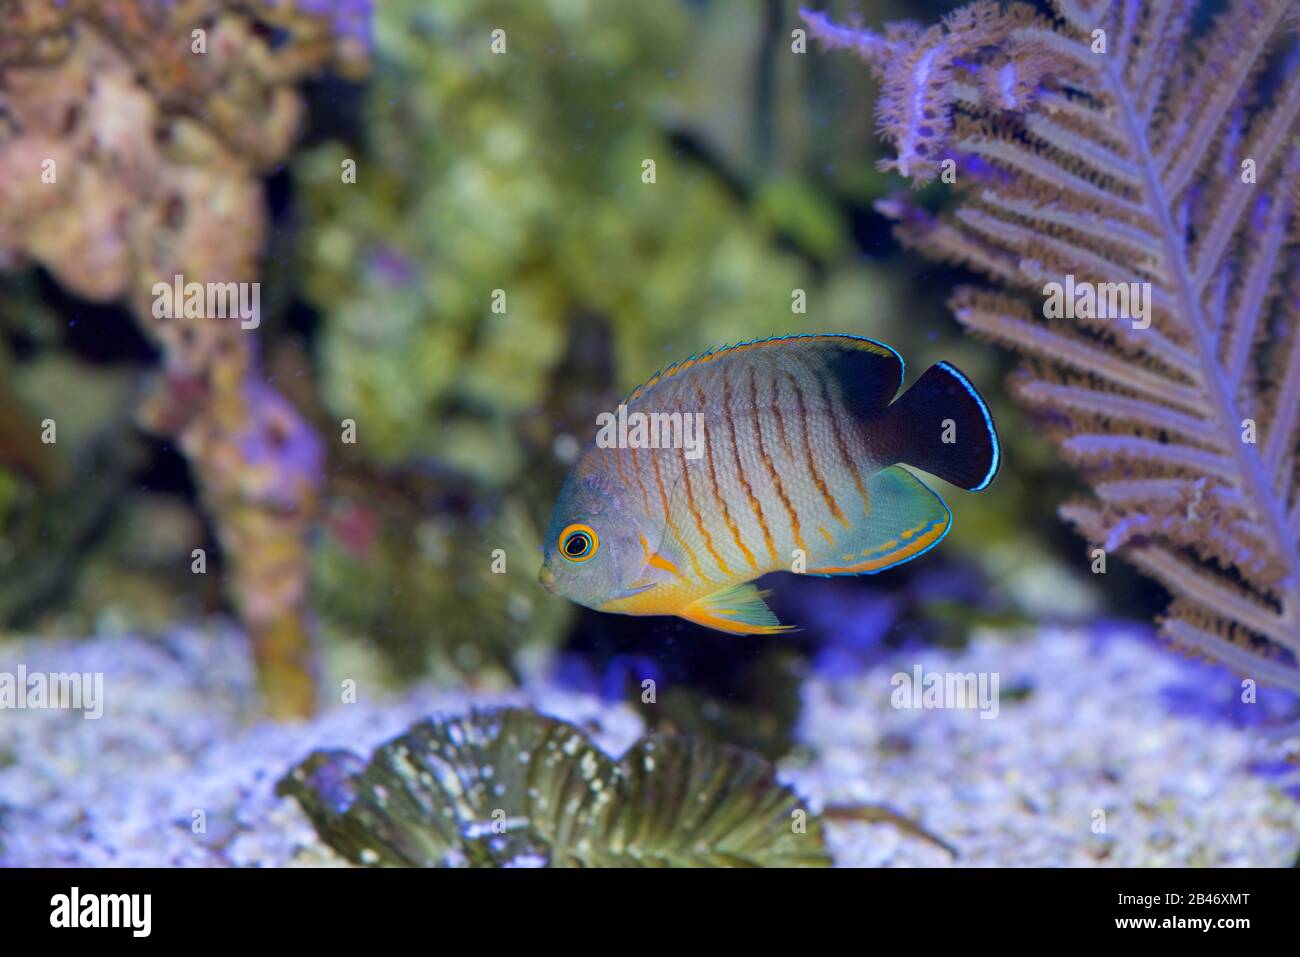 Eiblis Angelfisch, Centropyge Eibli, schwimmt in einem Korallenriffaquarium Stockfoto